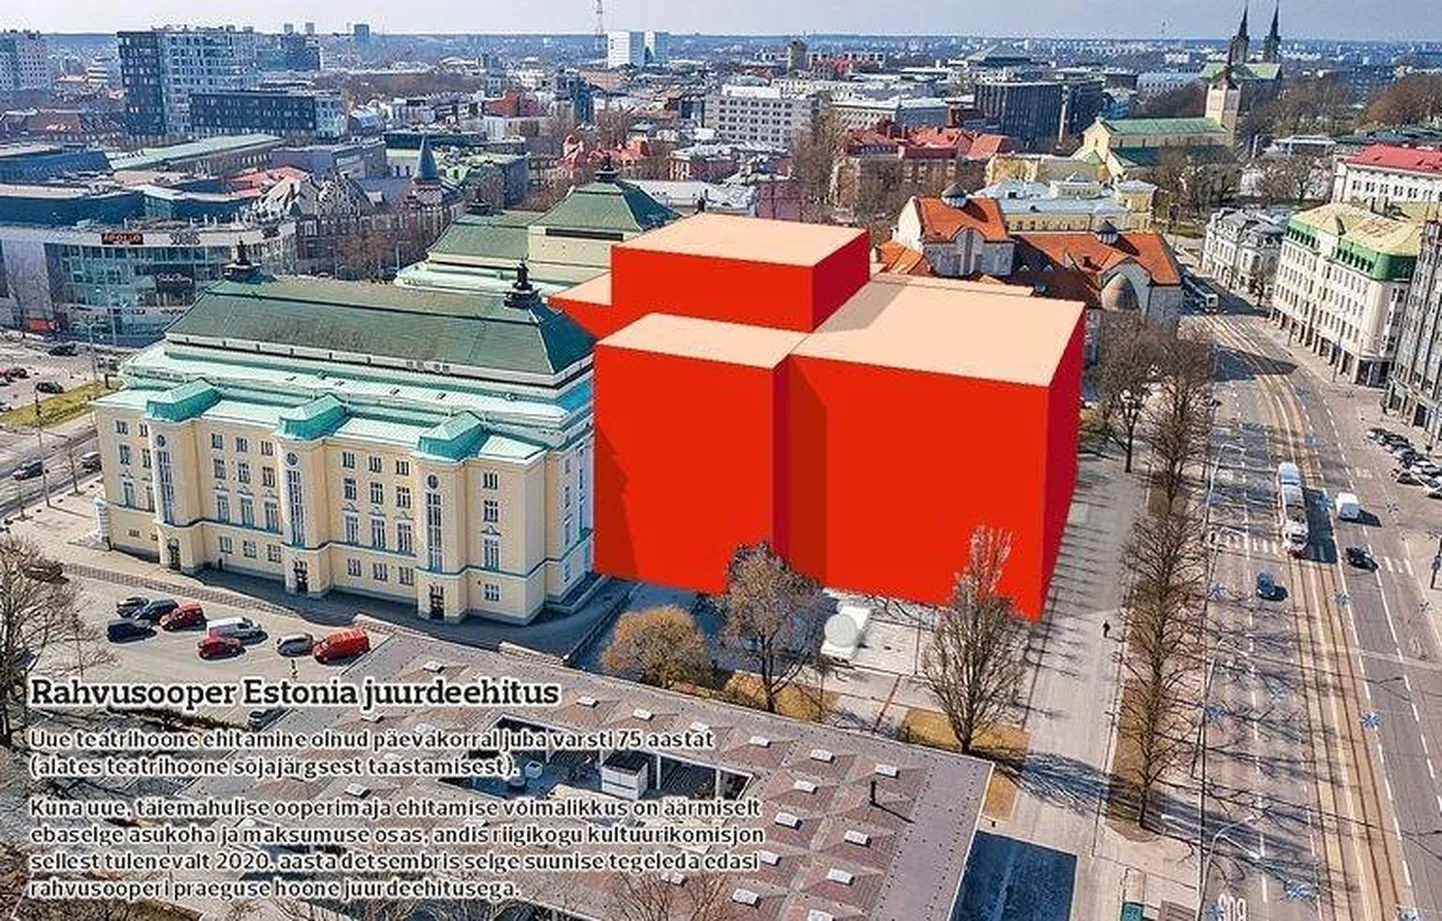 Estonia juurdeehituse eskiis andis möödunud aastal uue keelendi - punane kast.